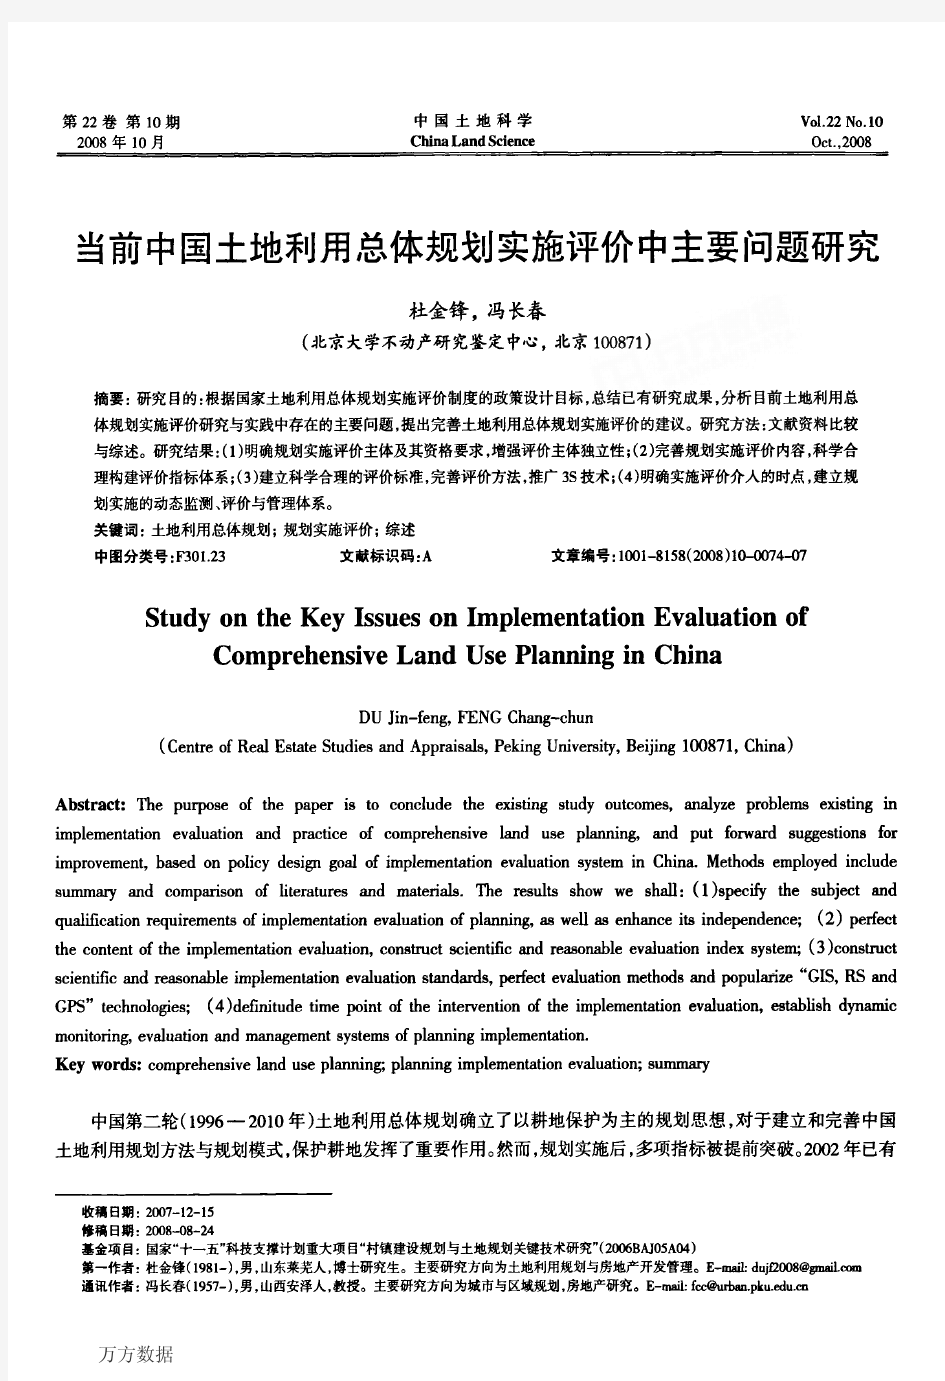 当前中国土地利用总体规划实施评价中主要问题研究